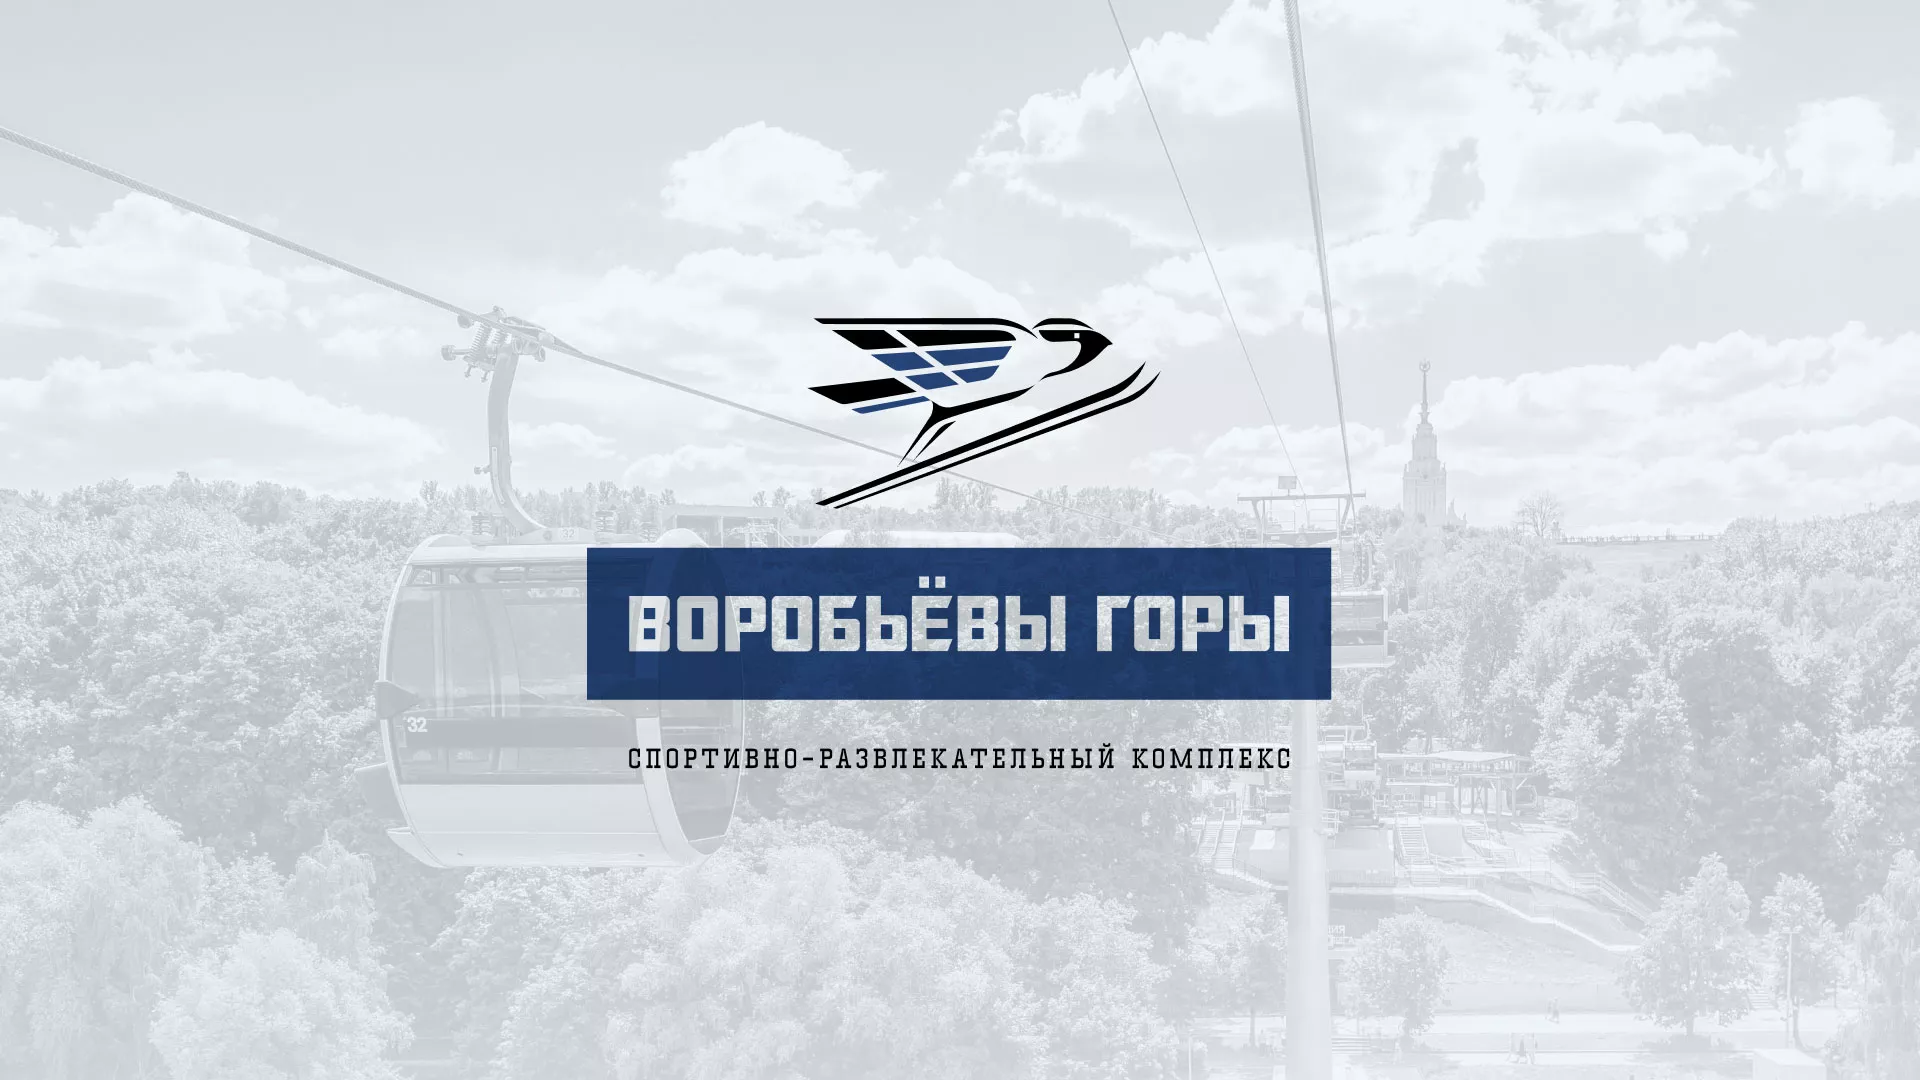 Разработка сайта в Сургуте для спортивно-развлекательного комплекса «Воробьёвы горы»